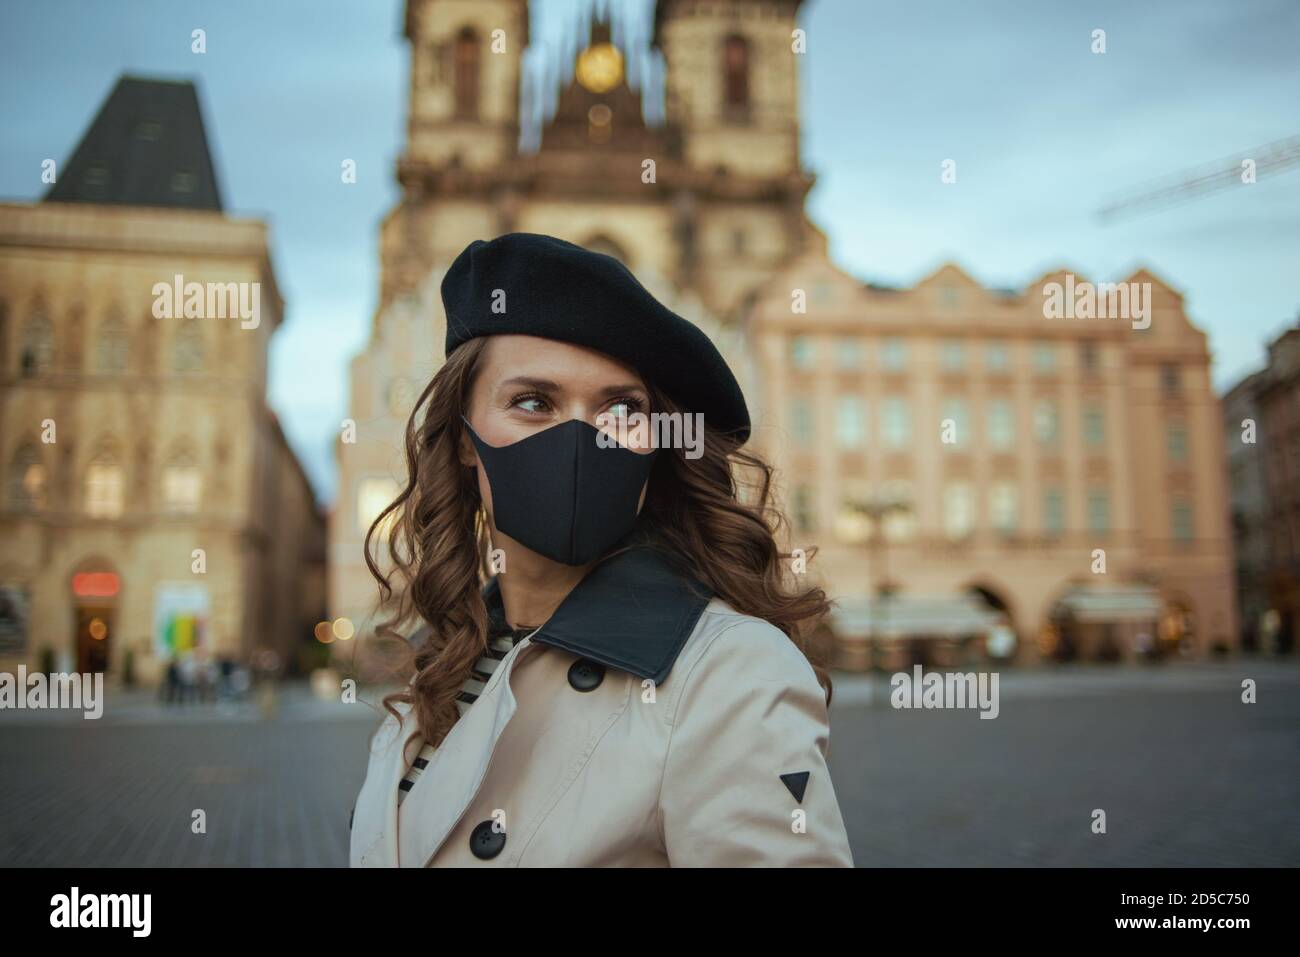 Hola otoño. Mujer de mediana edad moderna en gabardina beige y bereta negra con máscara negra en la Plaza de la Ciudad Vieja de Praga. Foto de stock